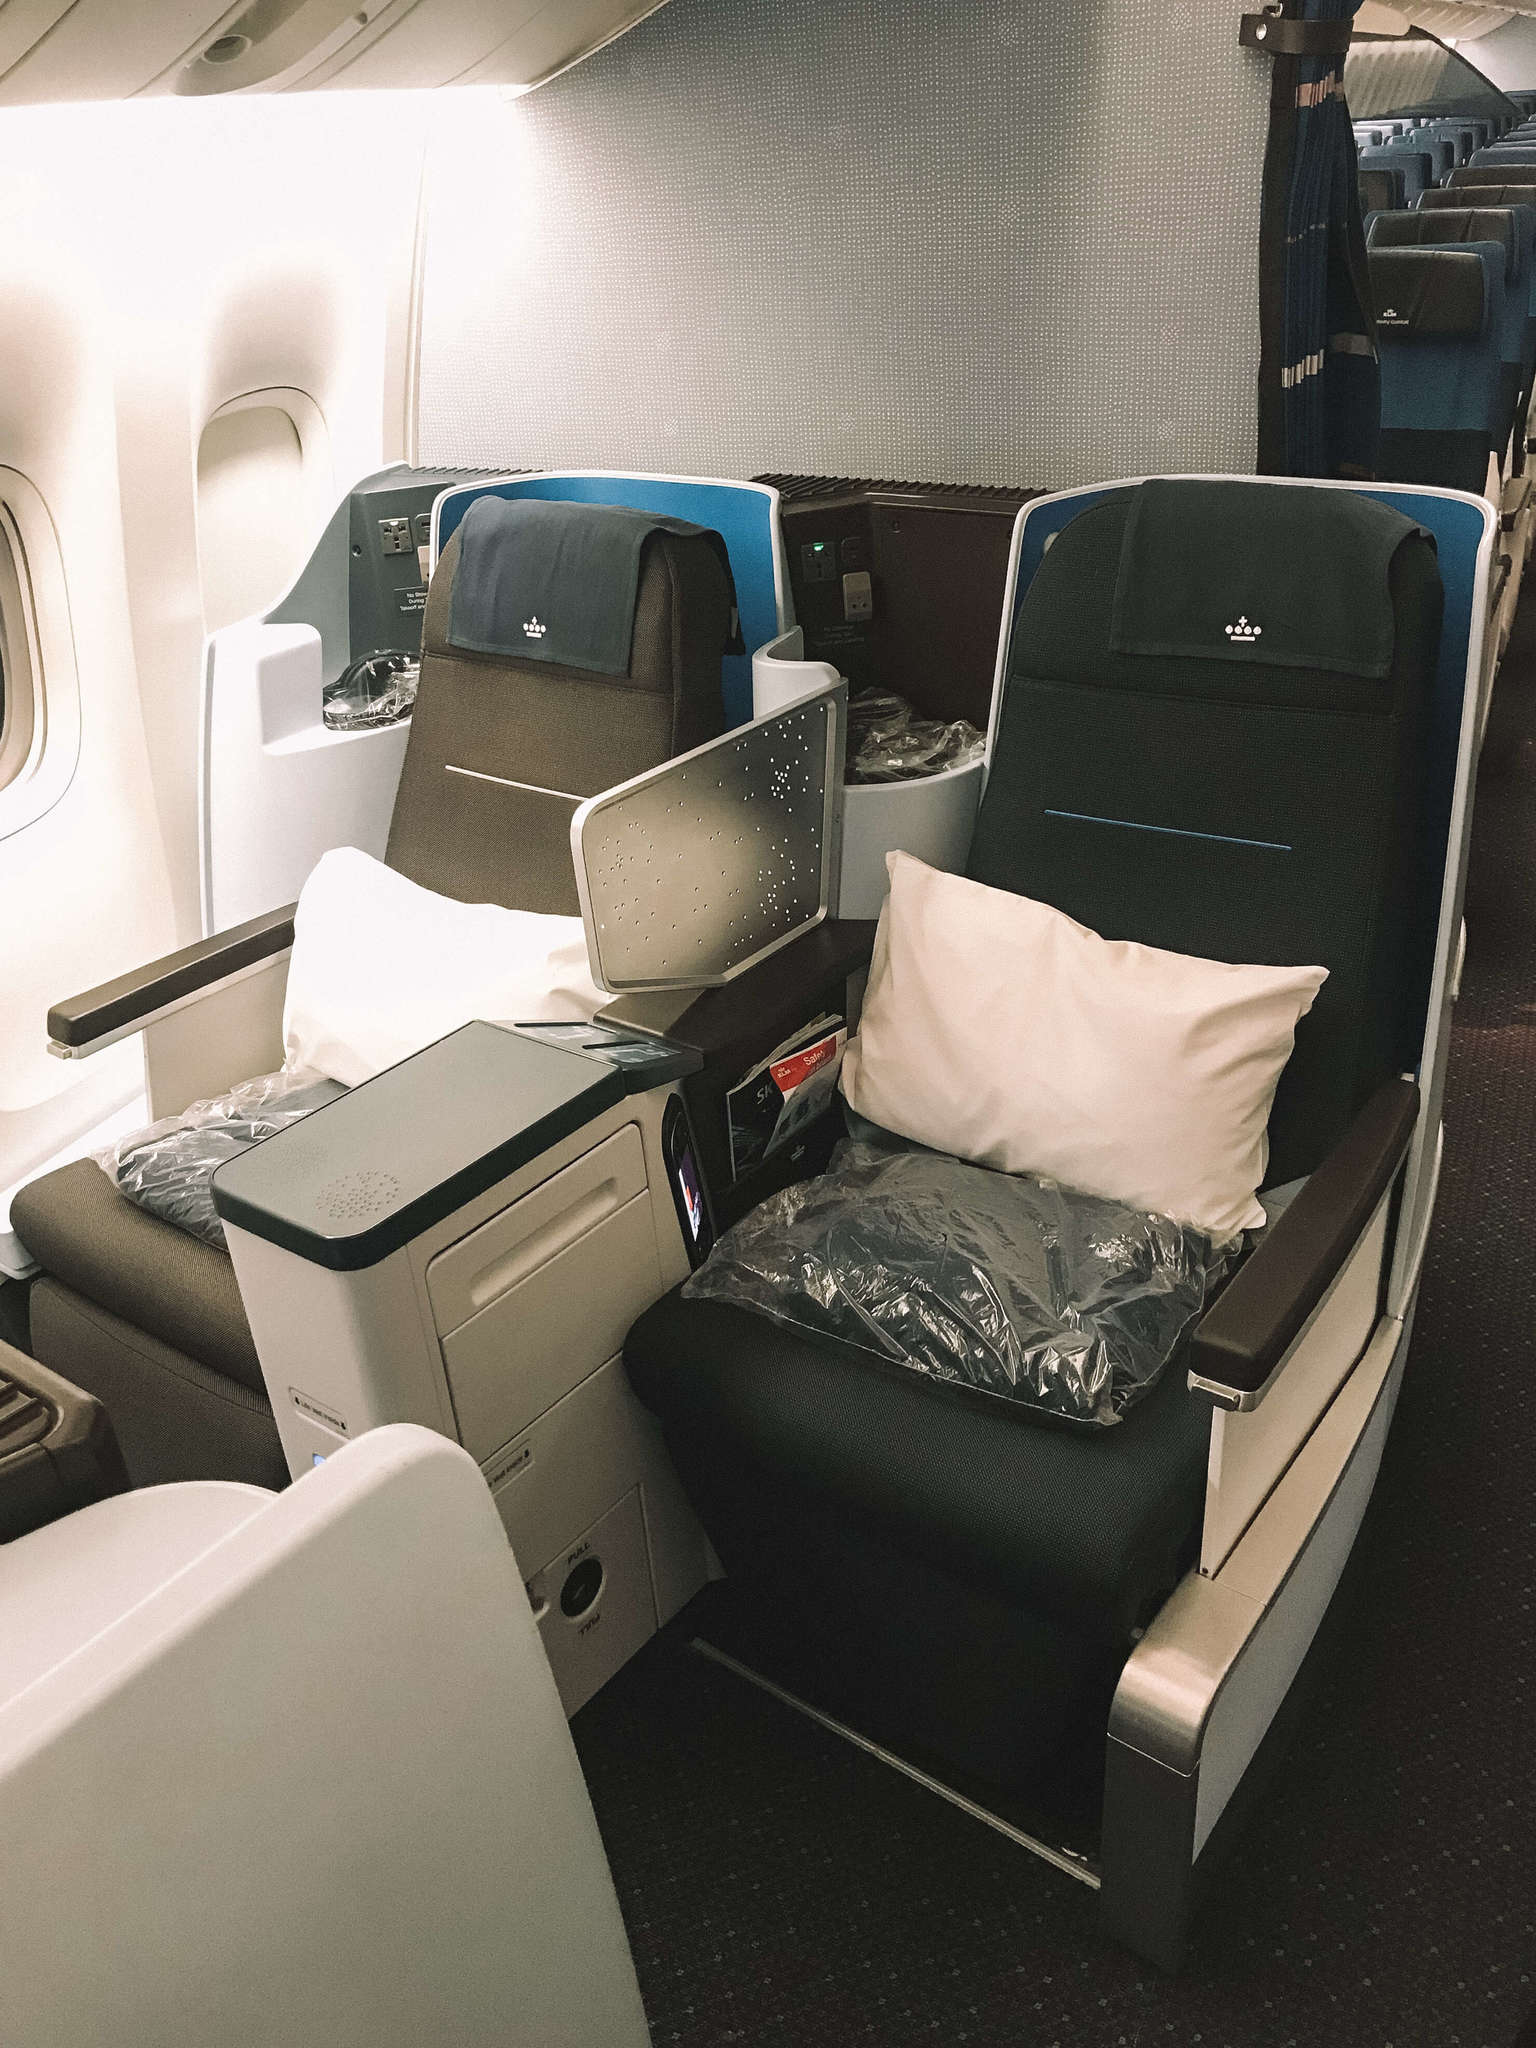 KLM Business Class Flight seats